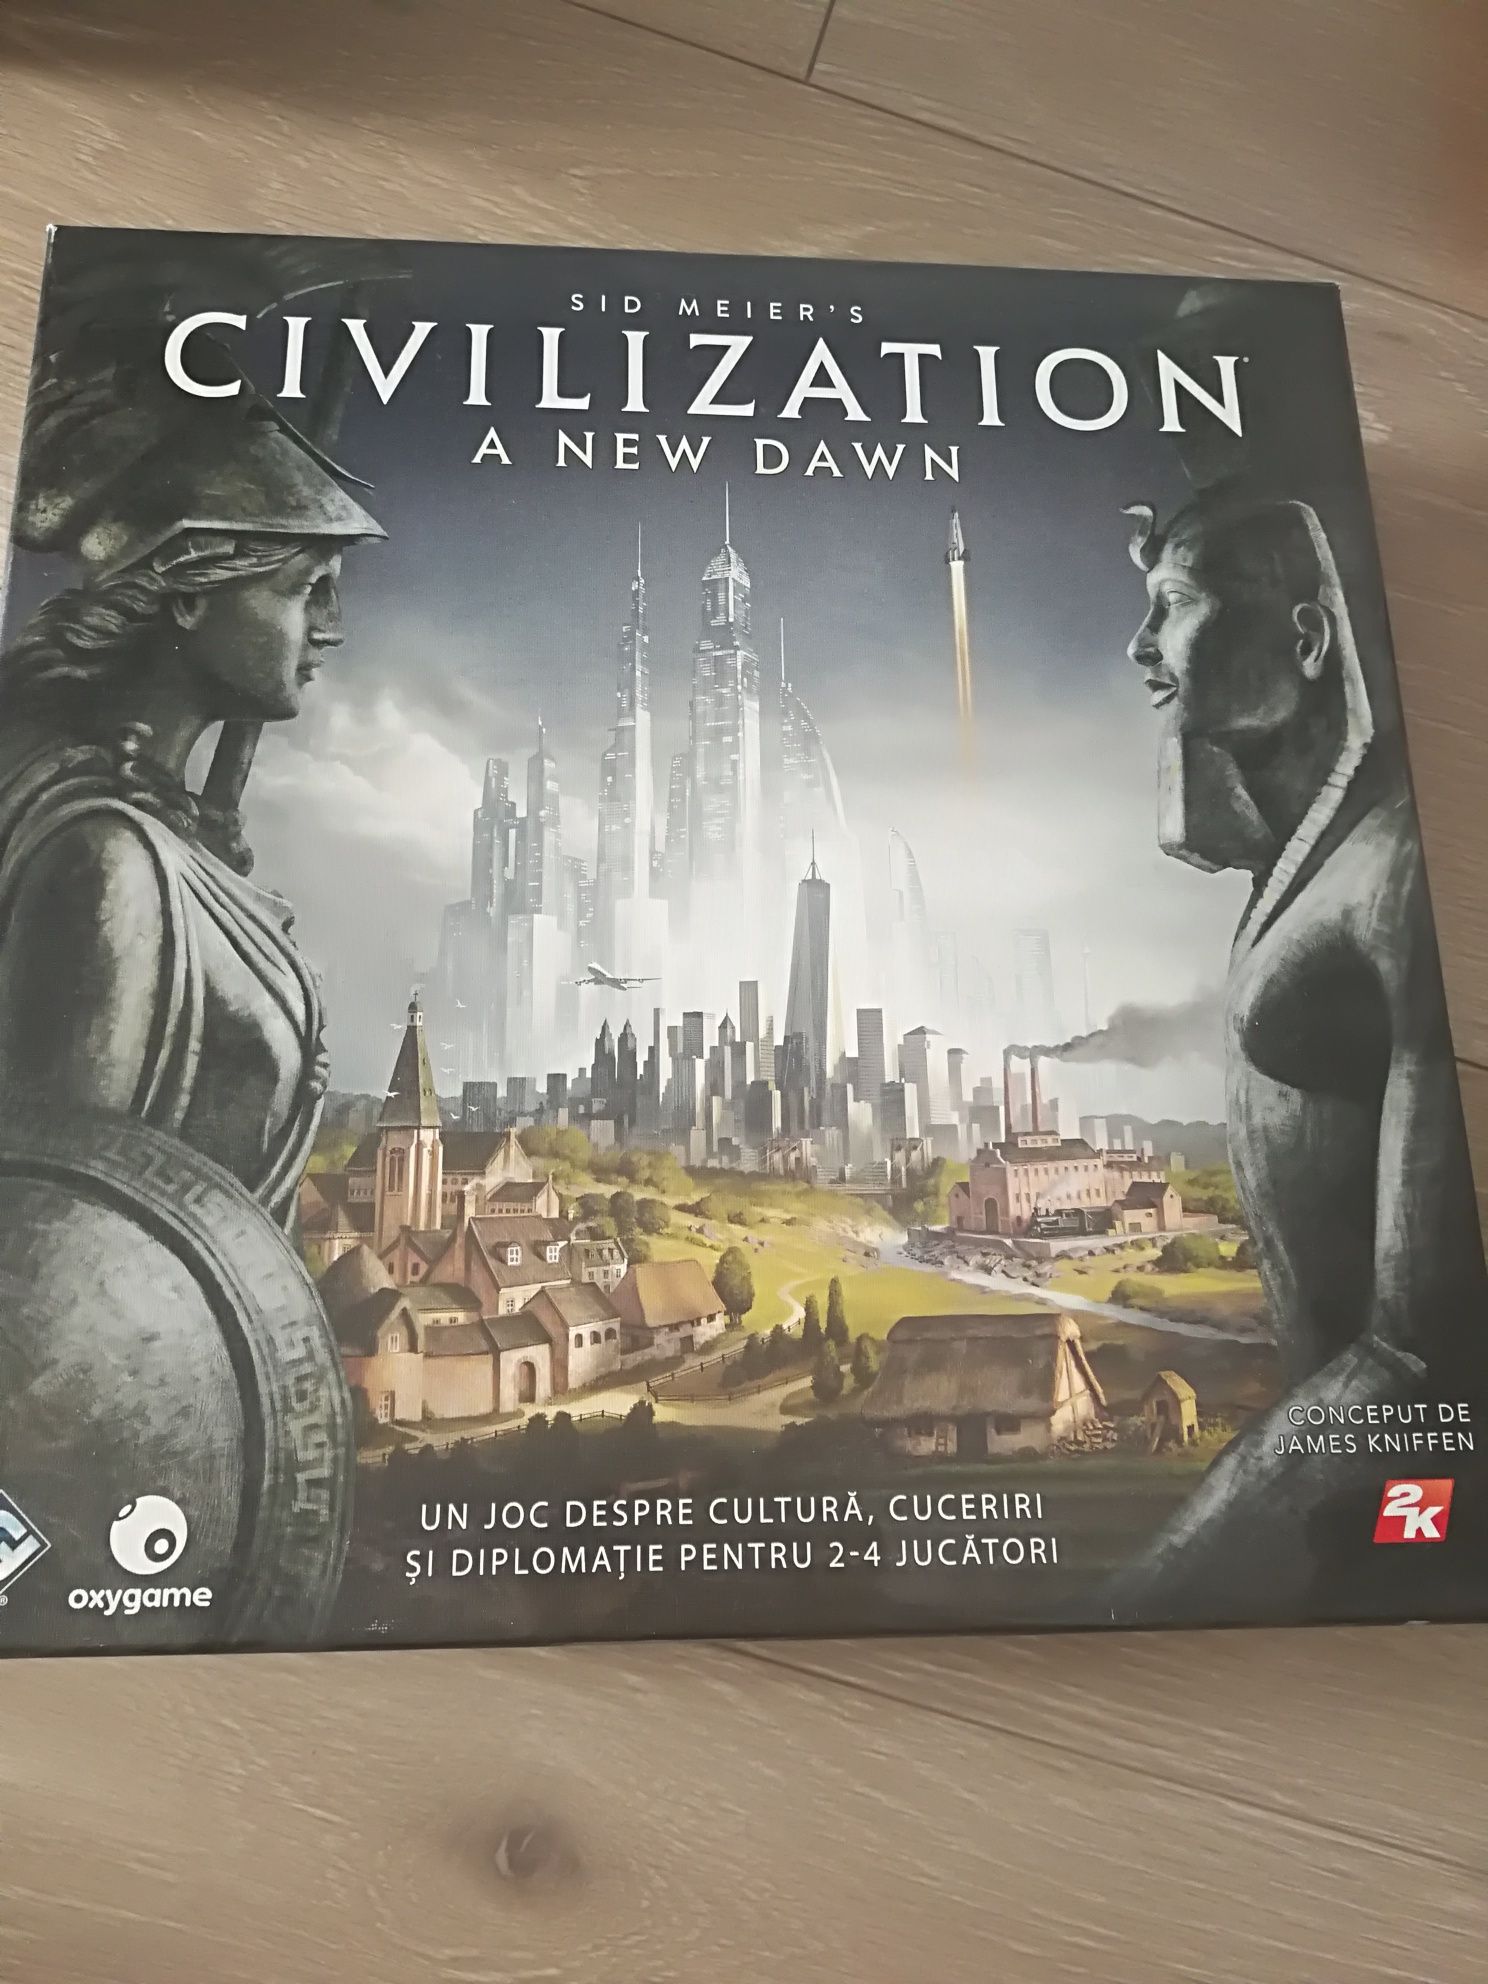 Vând joc Civilization the New dawn